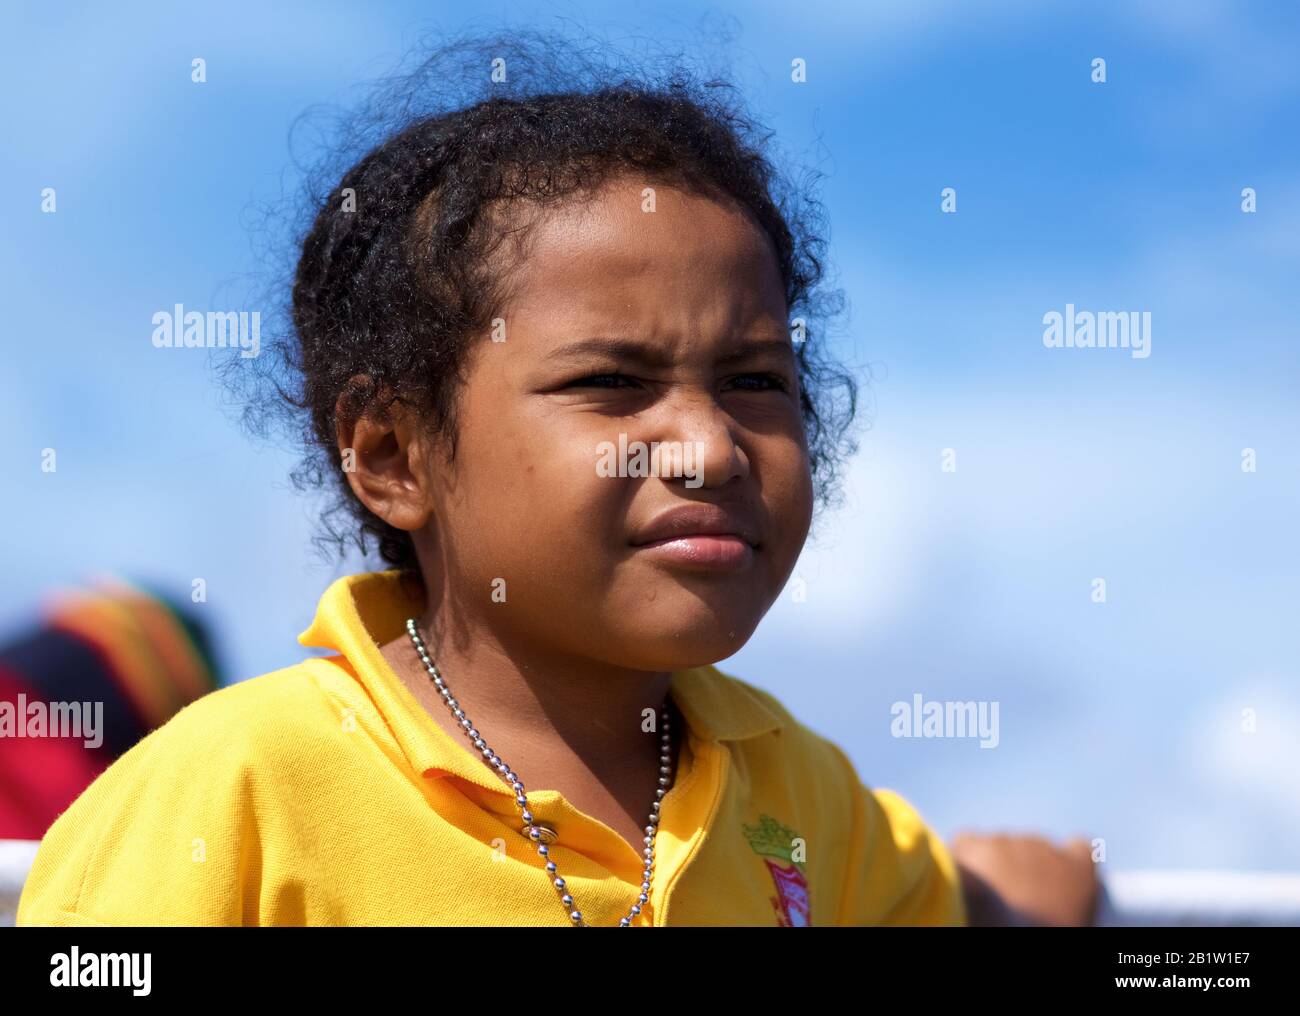 Indonesisches kleines Mädchen, Bootspassagier für Raja Ampat Island - Occidental Papua, Indonesien Stockfoto